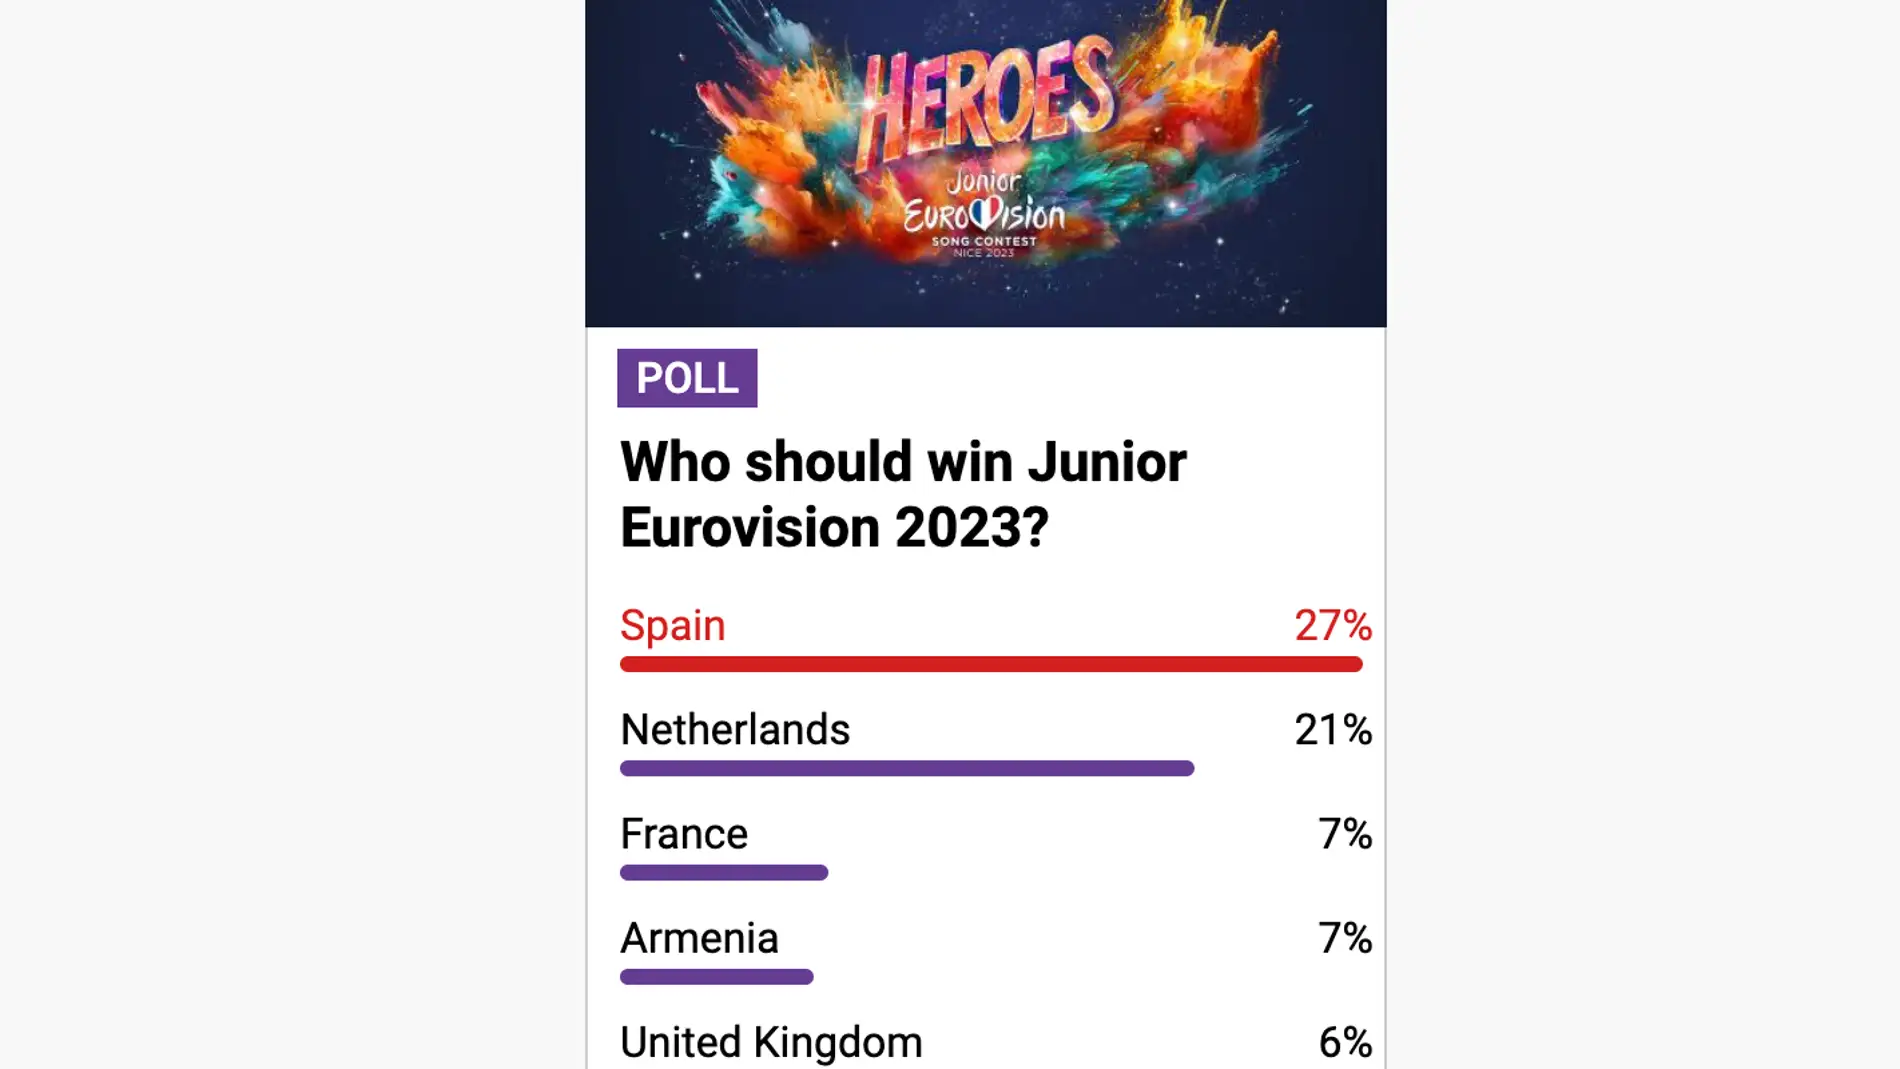 Apuestas eurovisión junior 2023